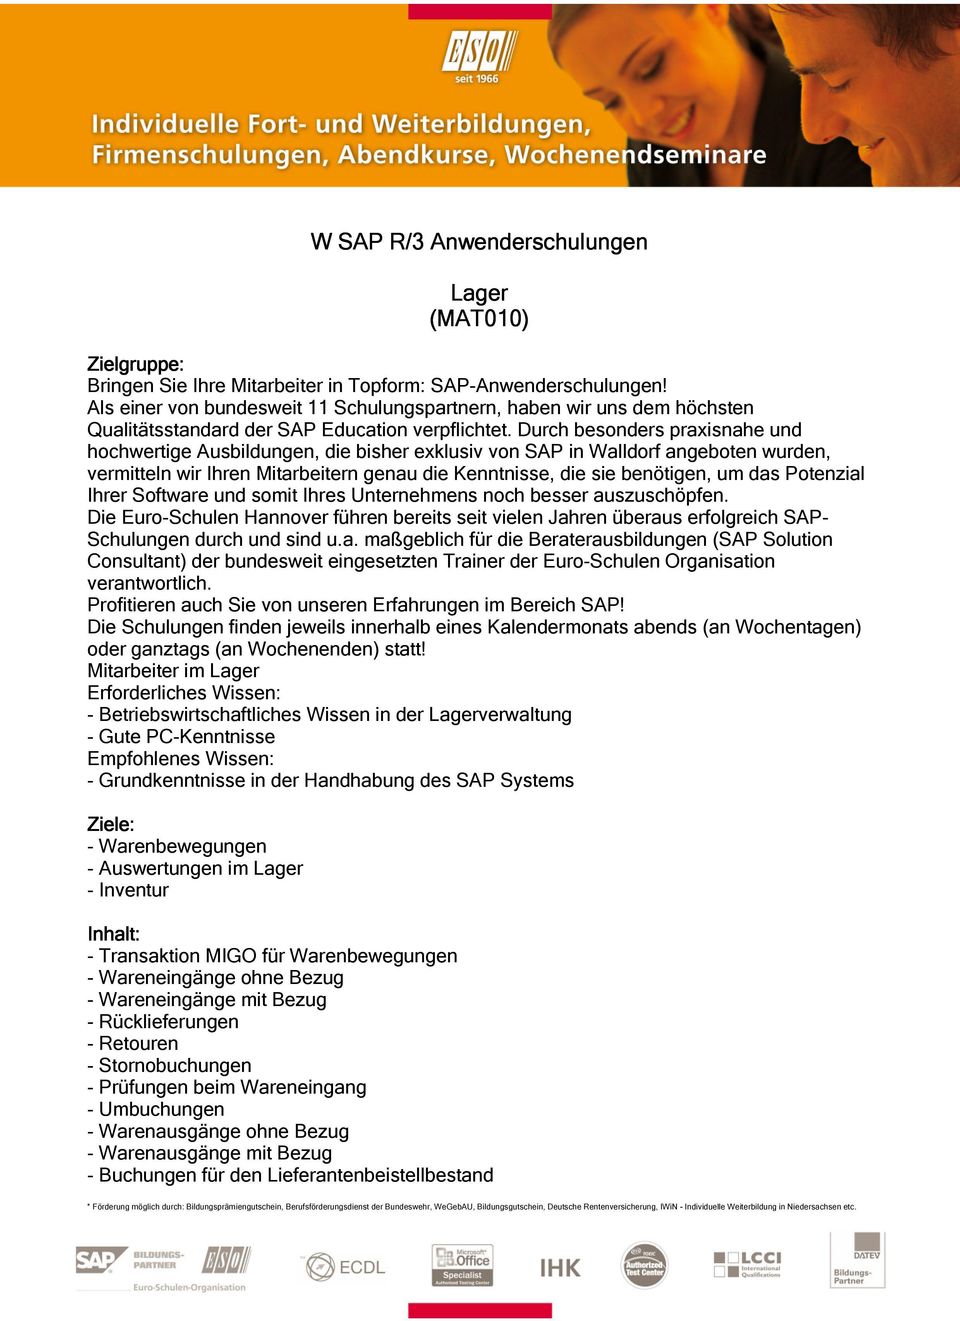 Durch besonders praxisnahe und hochwertige Ausbildungen, die bisher exklusiv von SAP in Walldorf angeboten wurden, vermitteln wir Ihren Mitarbeitern genau die Kenntnisse, die sie benötigen, um das